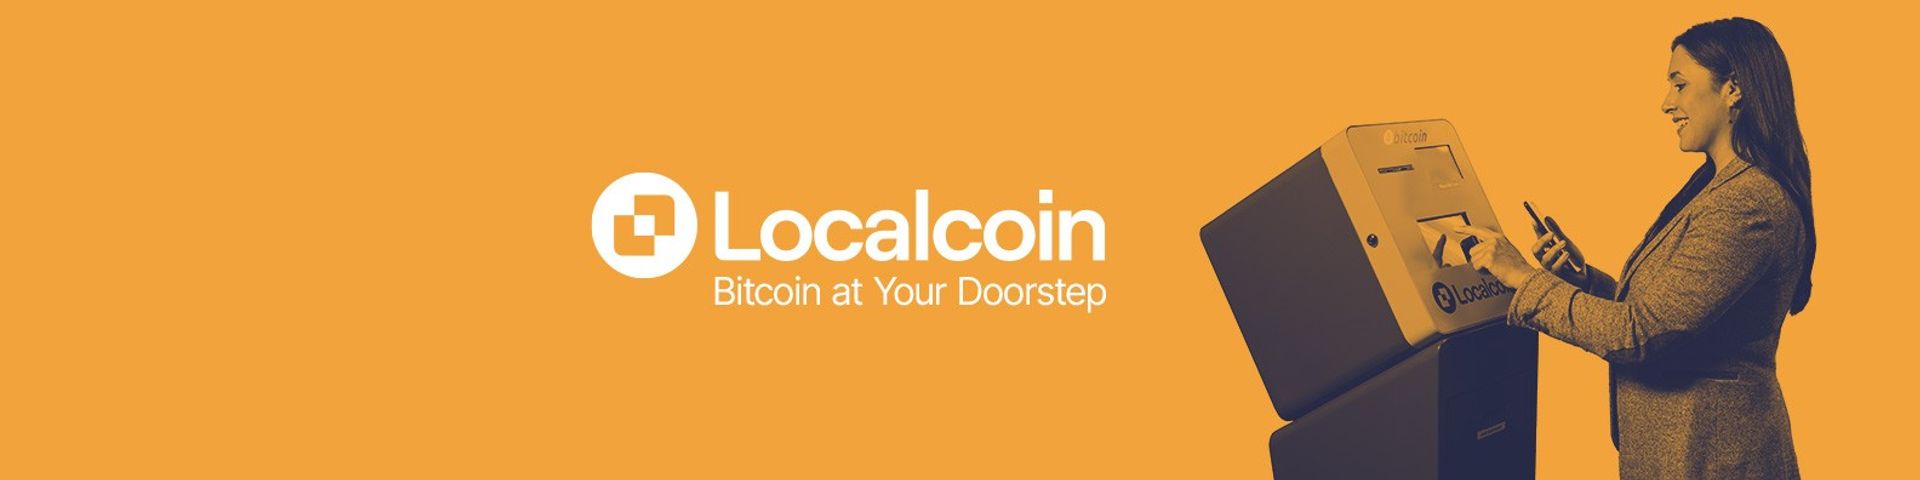 Localcoin — Bitcoin at Your Doorstep